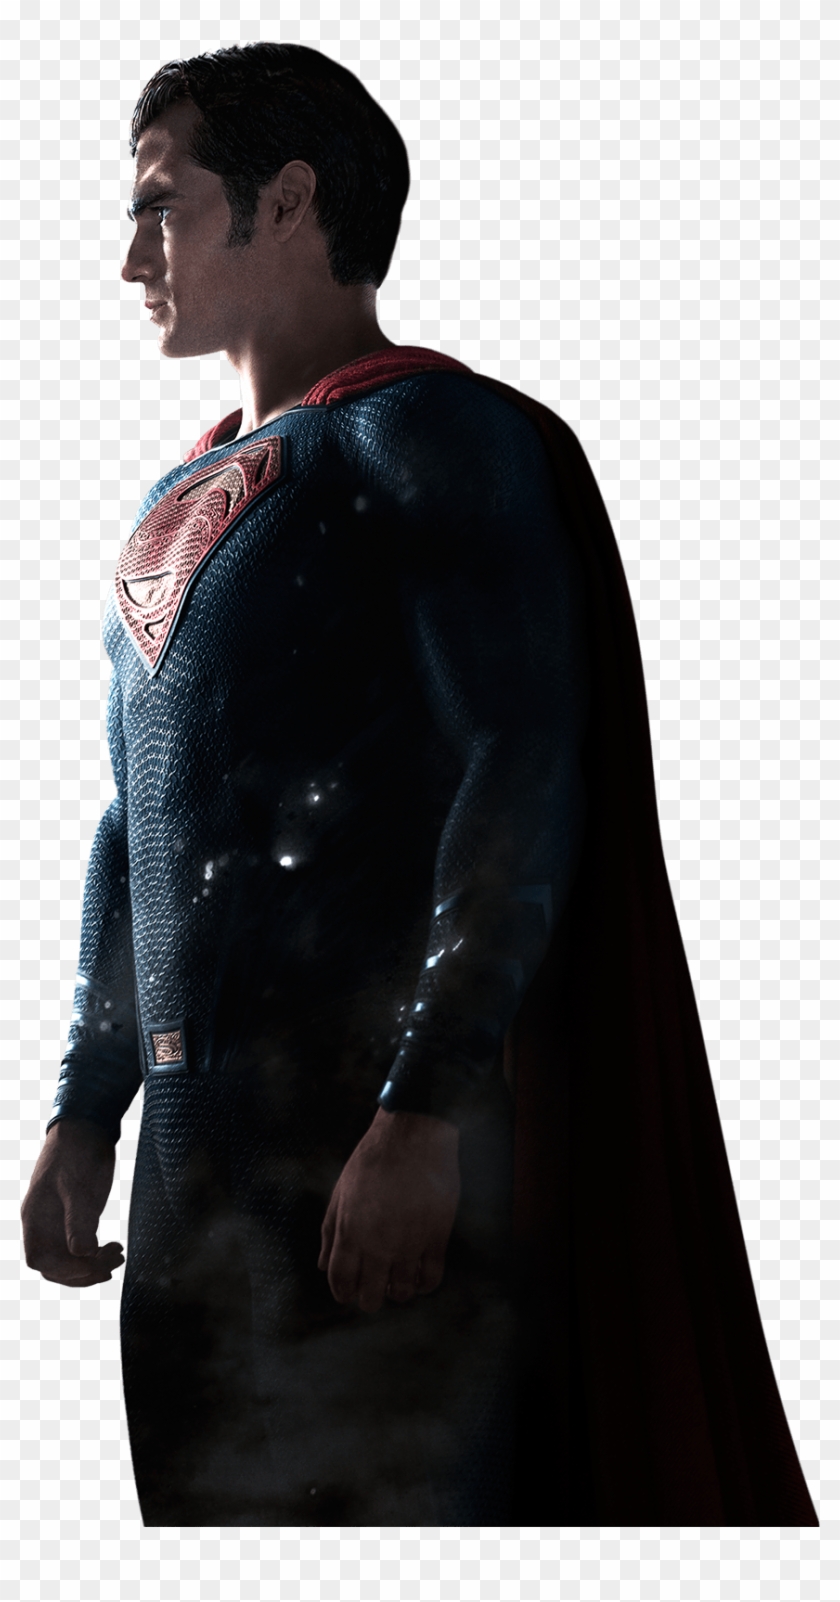 Batman V Superman Dawn Of Justice Png Clipart - Batman V Superman: Dawn Of Justice Transparent Png #583763